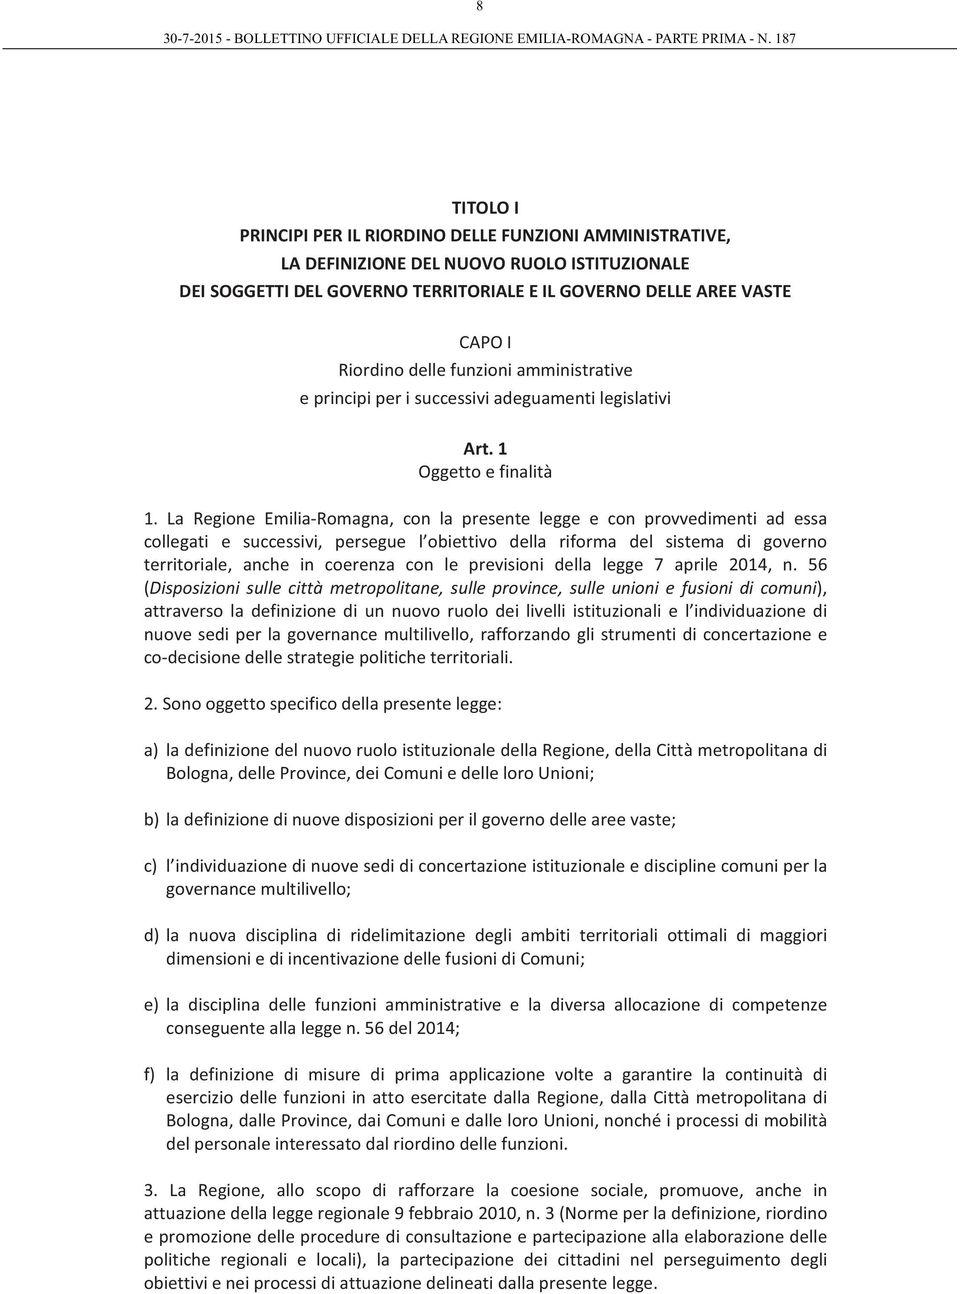 La Regione Emilia-Romagna, con la presente legge e con provvedimenti ad essa collegati e successivi, persegue l obiettivo della riforma del sistema di governo territoriale, anche in coerenza con le